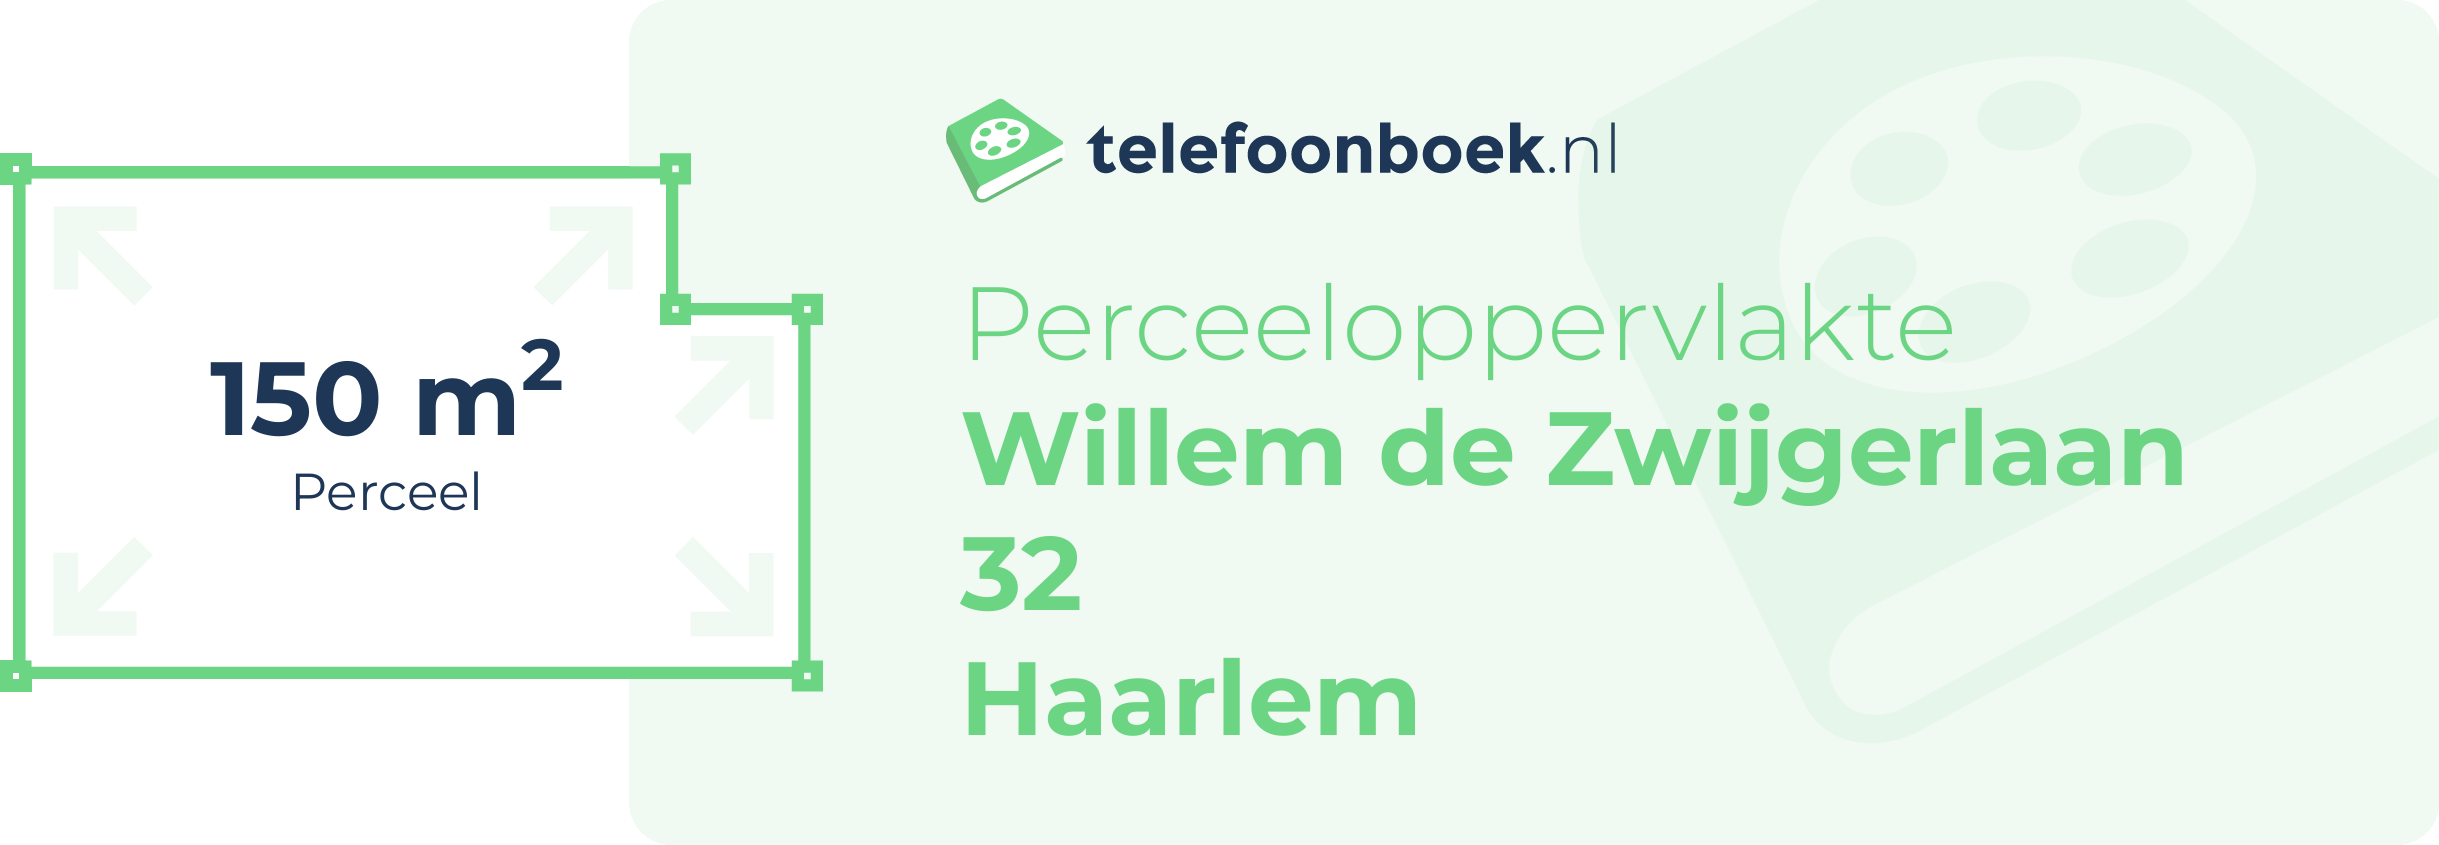 Perceeloppervlakte Willem De Zwijgerlaan 32 Haarlem